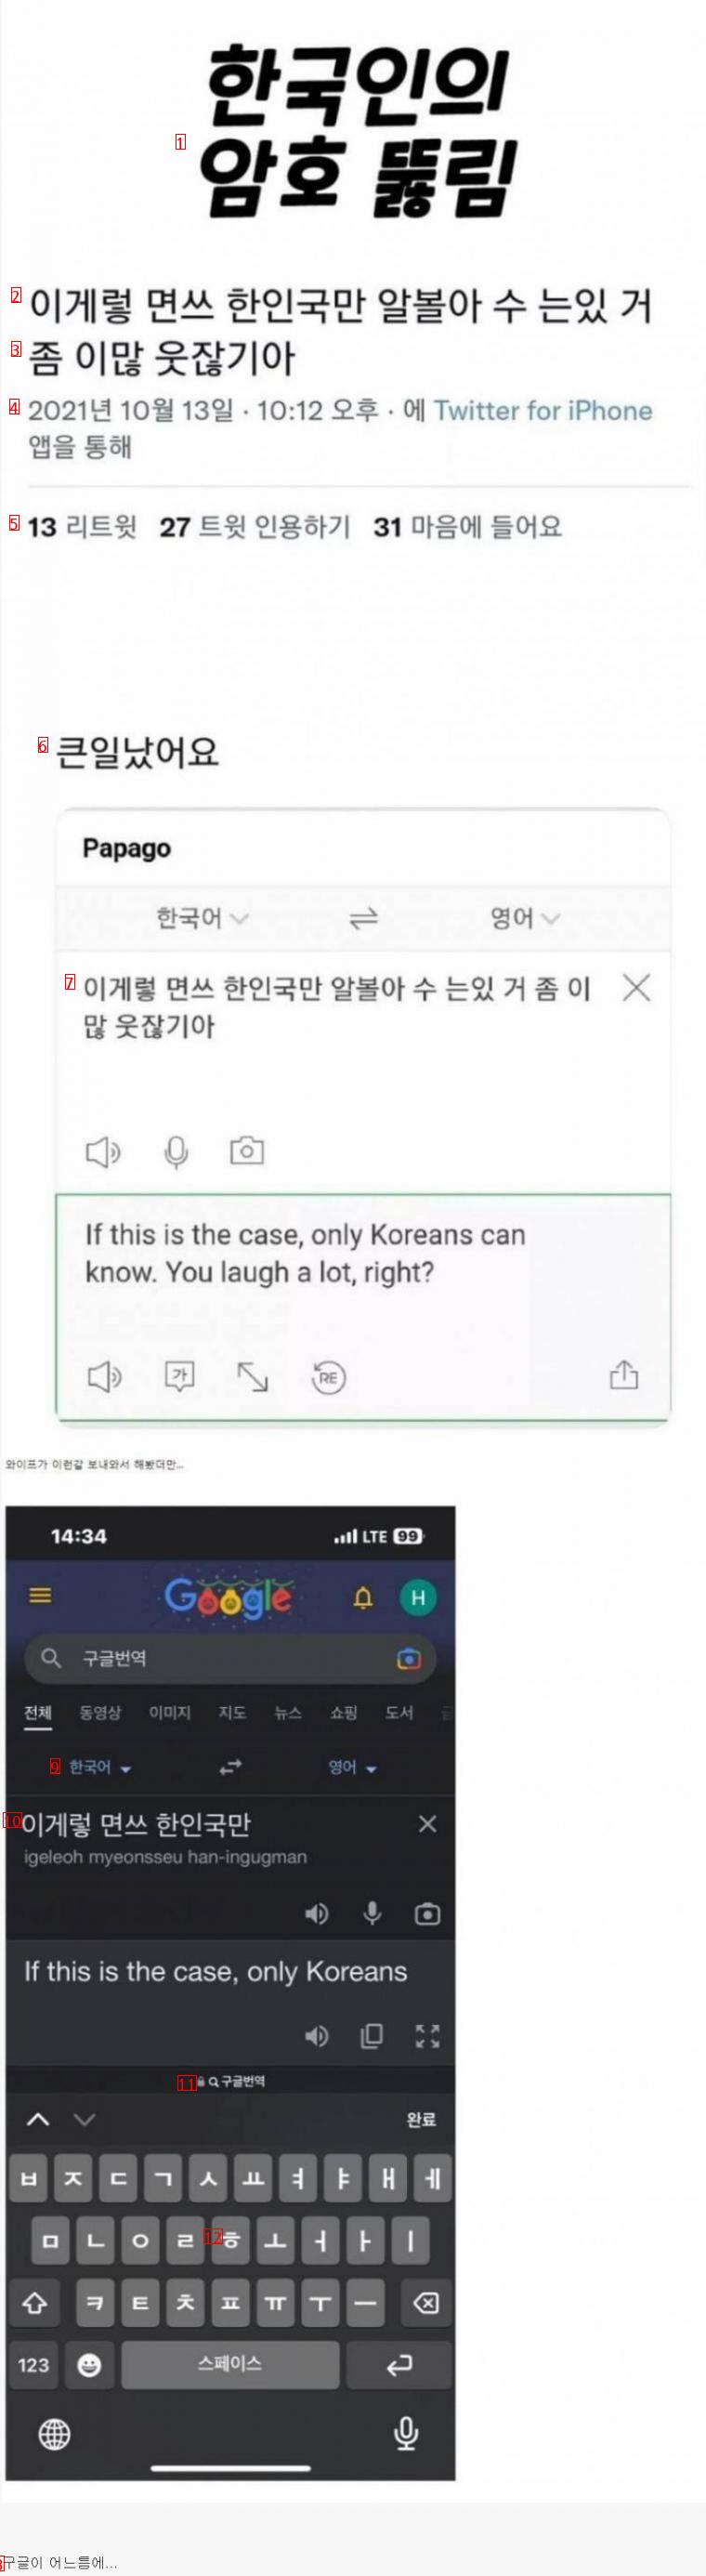 韓国人だけの暗号が破れる